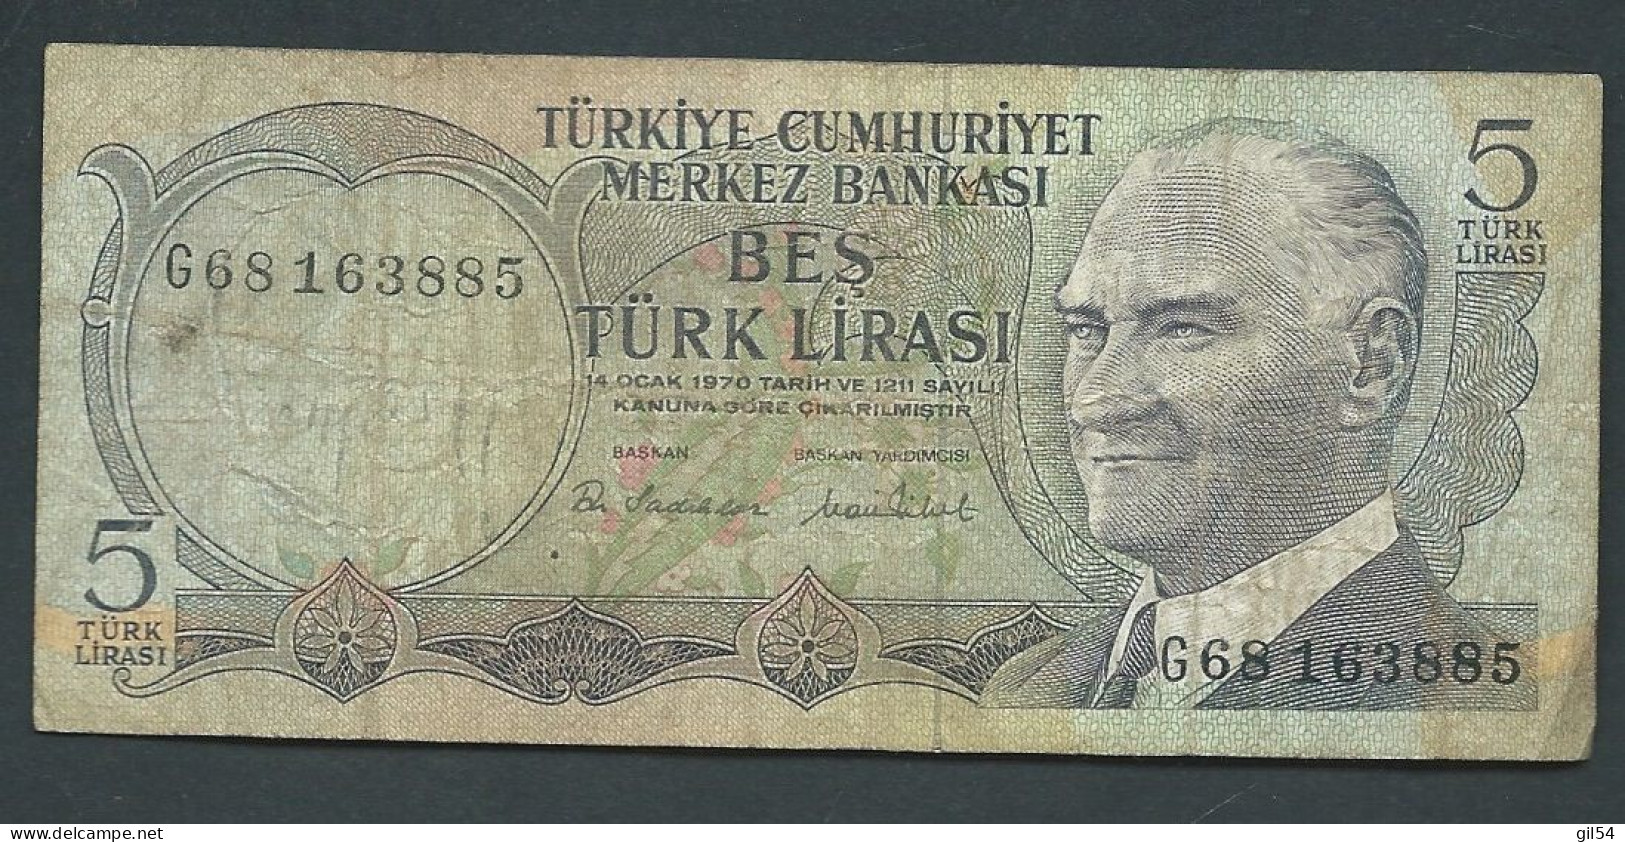 Turquie  /  TURKEY 5 LIRASI L. 1970  - G68163885 - Laura 13804 - Turquie